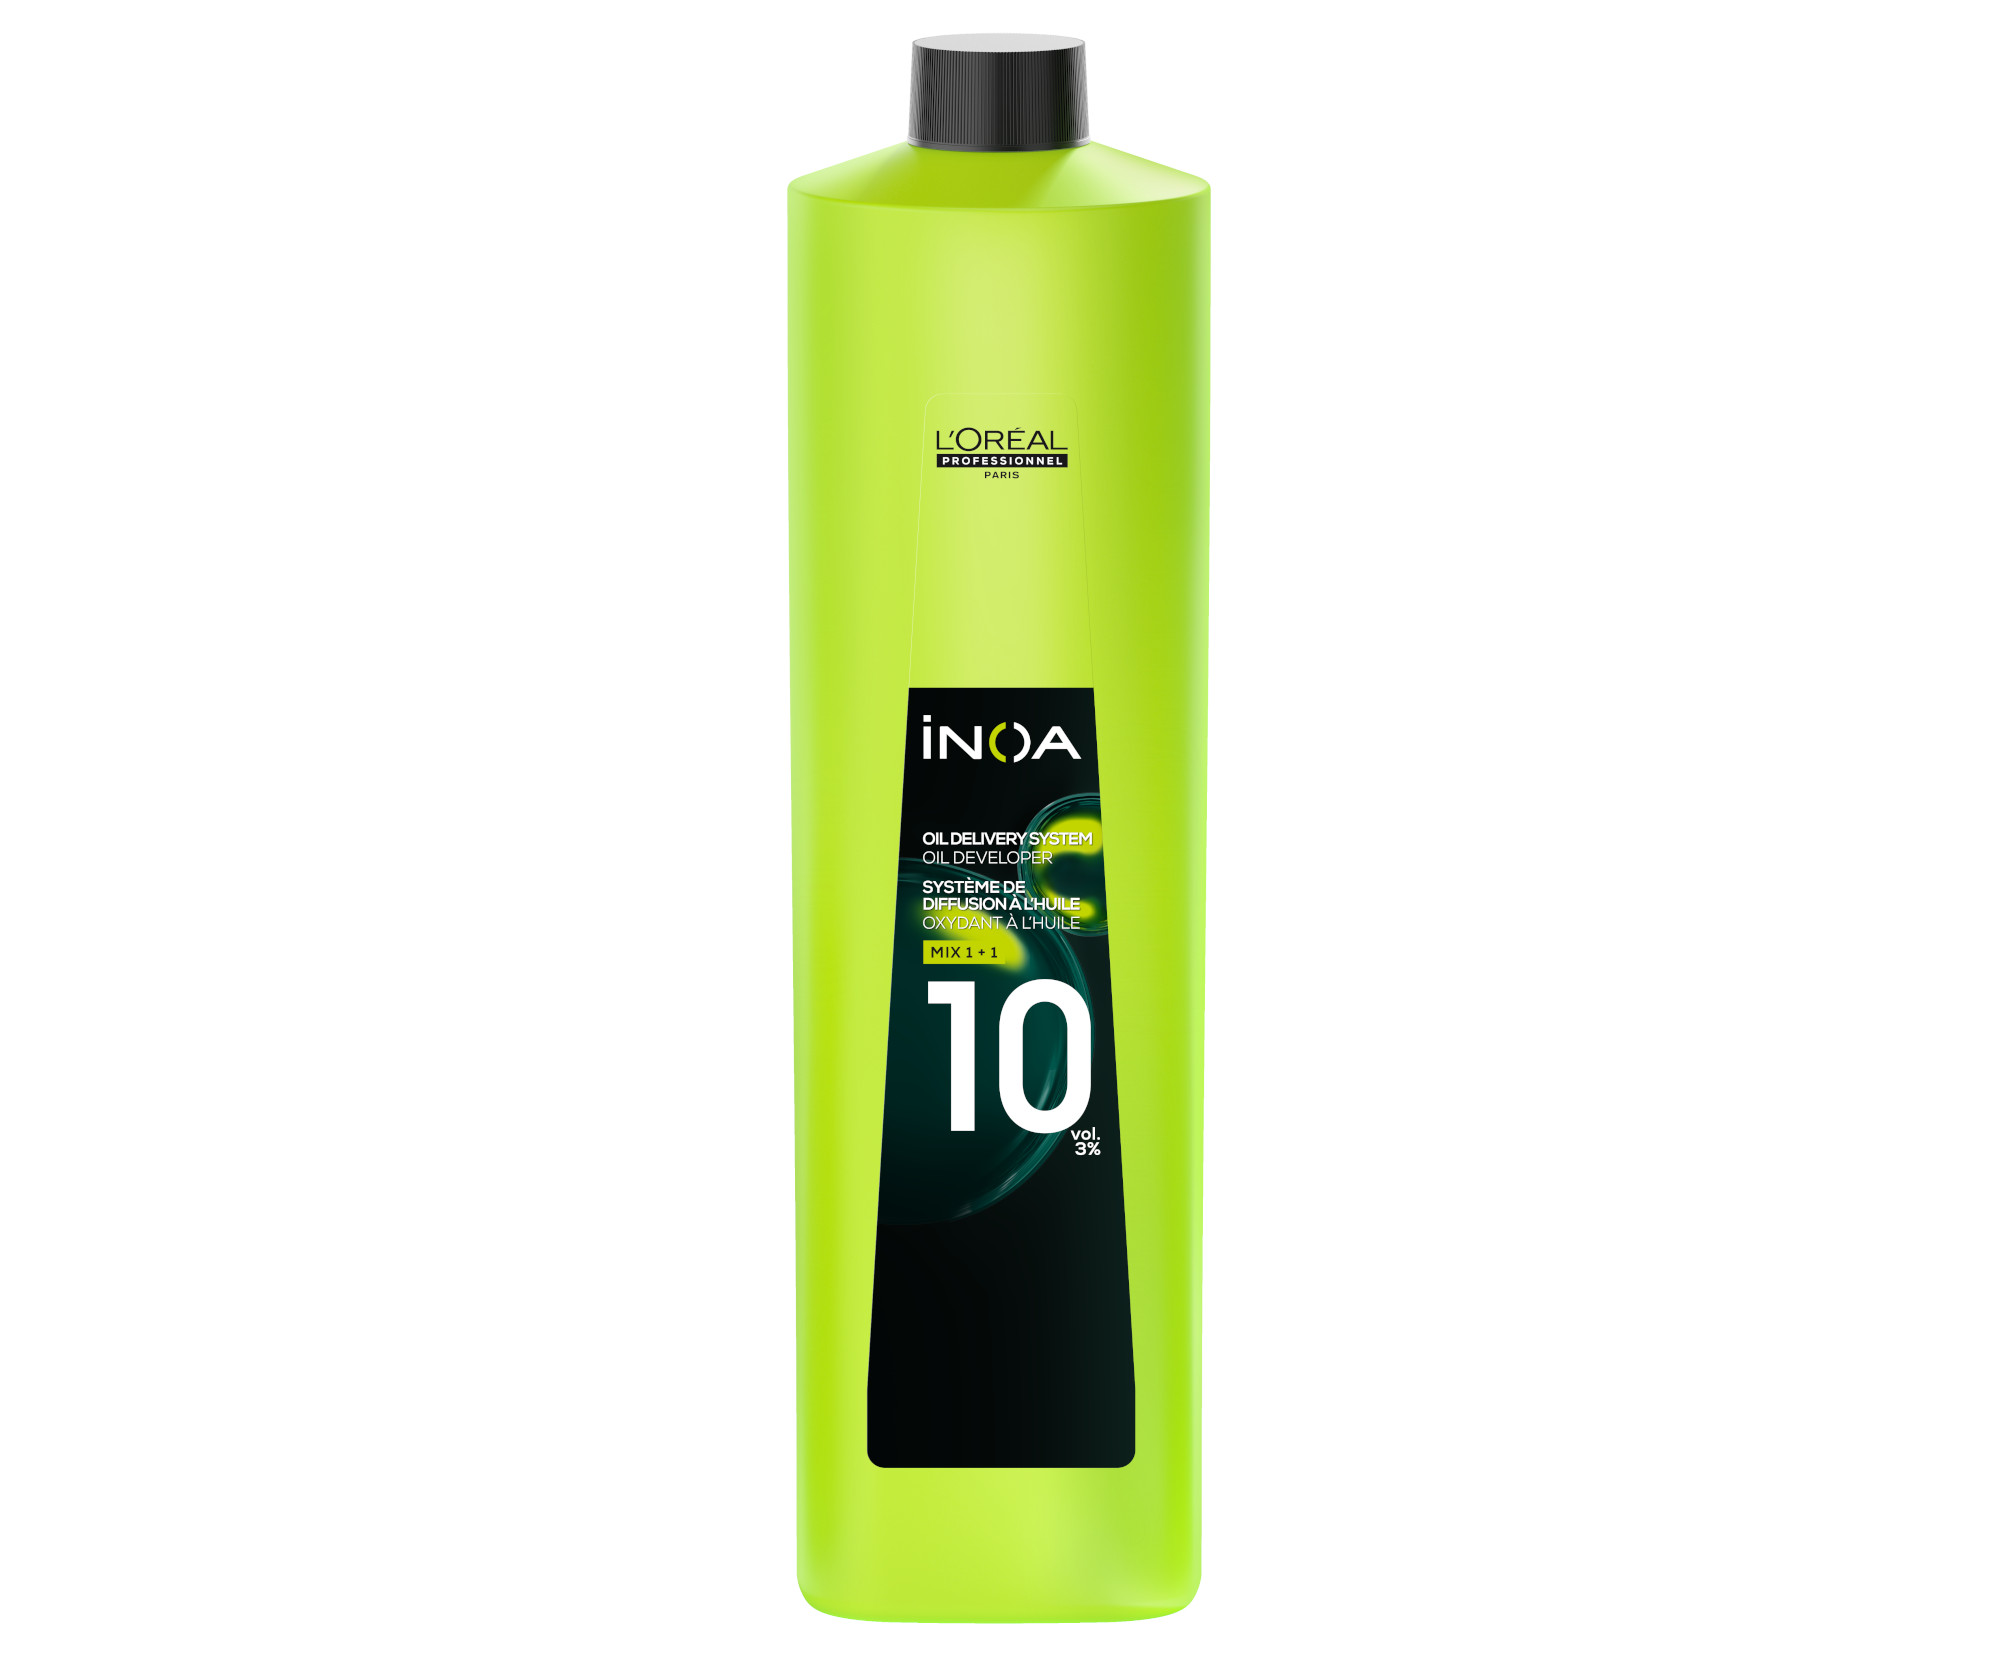 Oxidační krém Loréal Professionnel iNOA Oil Developer 10 vol. 3% - 1000 ml (10 VOL 3 %) - L’Oréal Professionnel + DÁREK ZDARMA